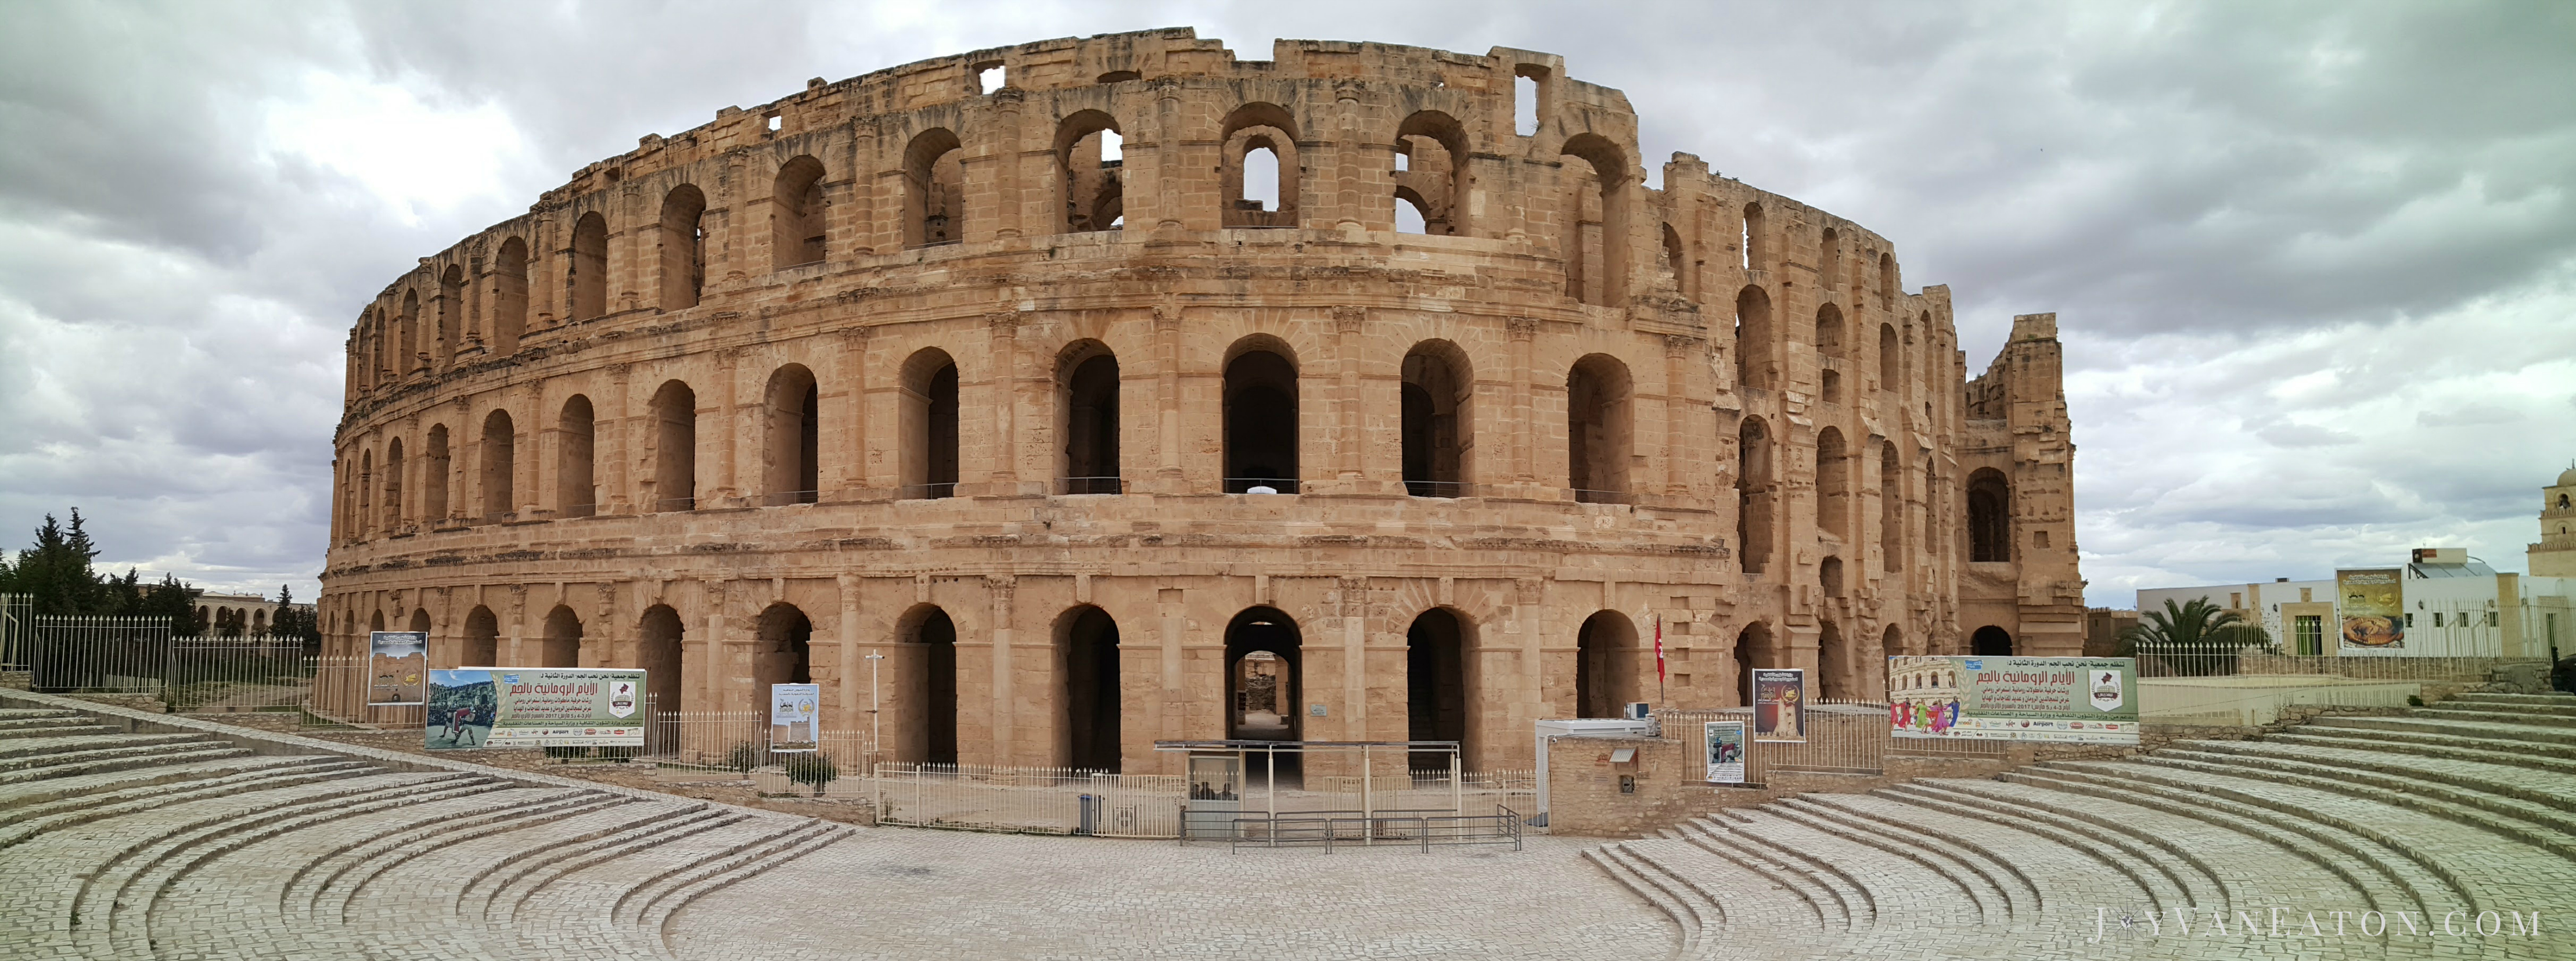 Roman Amphitheater in El Djem